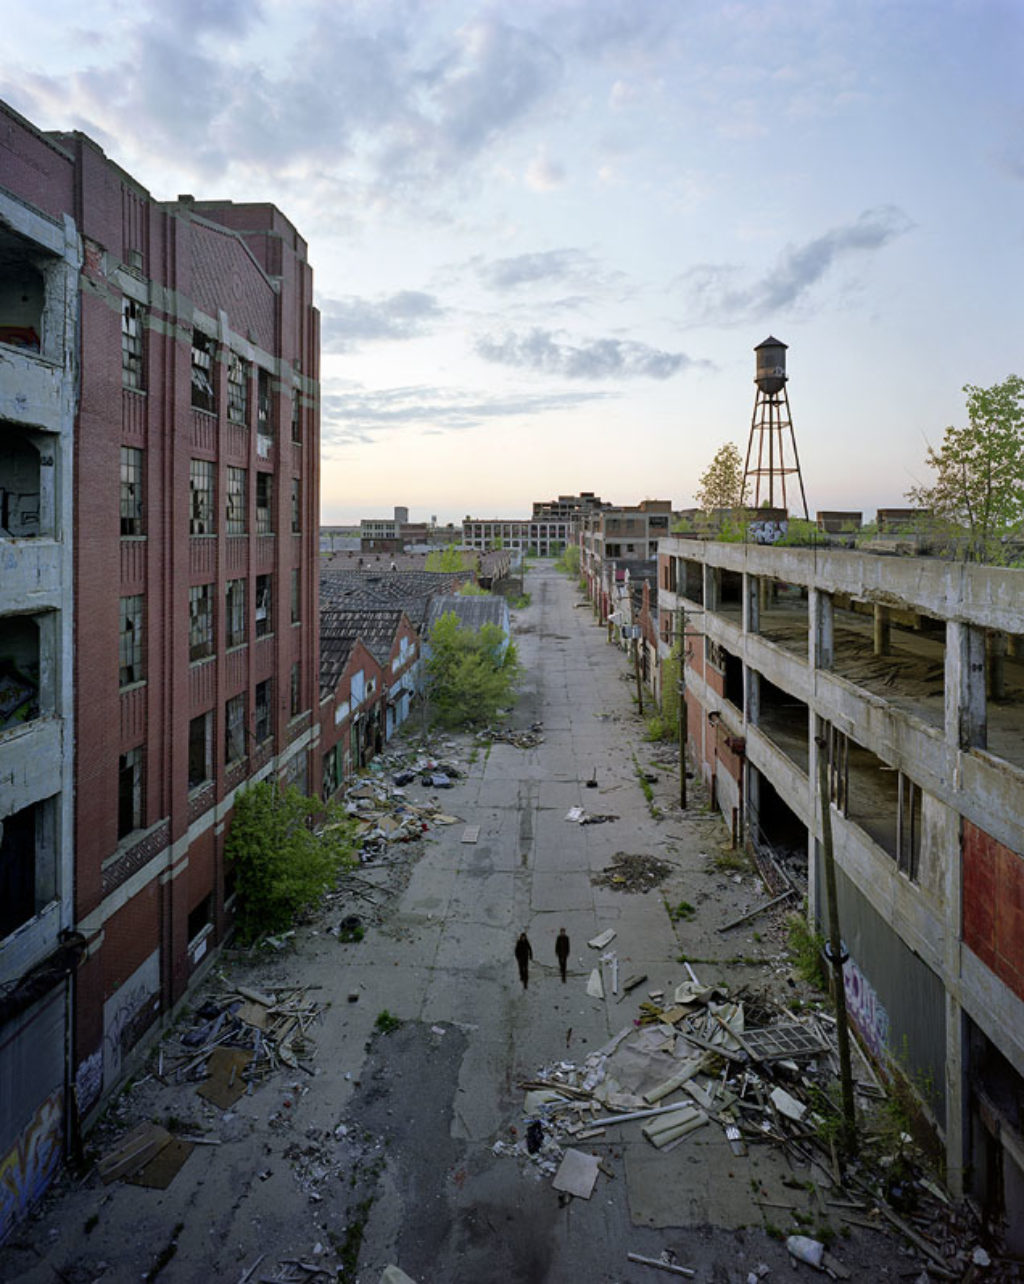 Zone sud, usine automobile Packard (2009), © Yves Marchand et Romain Meffre, The Ruins of Detroit (2010), ouvrage paru en français sous le titre Détroit, vestiges du rêve américain.